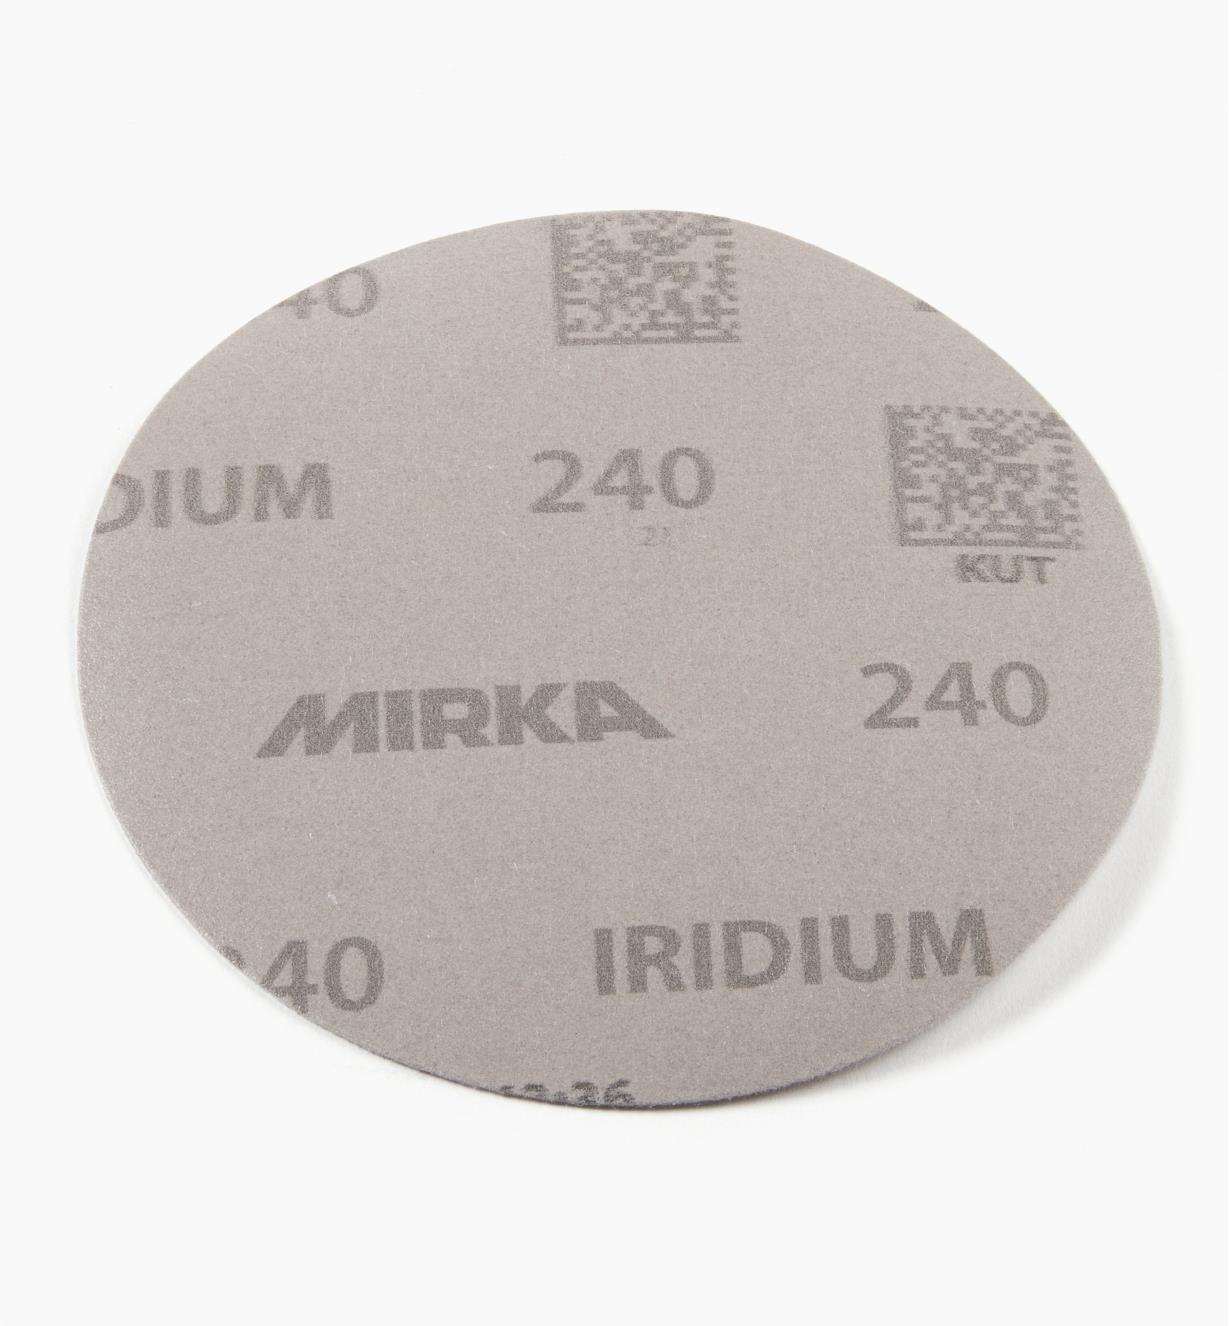 08K0947 - Disque abrasif autoagrippant Iridium, 5 po, sans trous, grain 240, l'unité